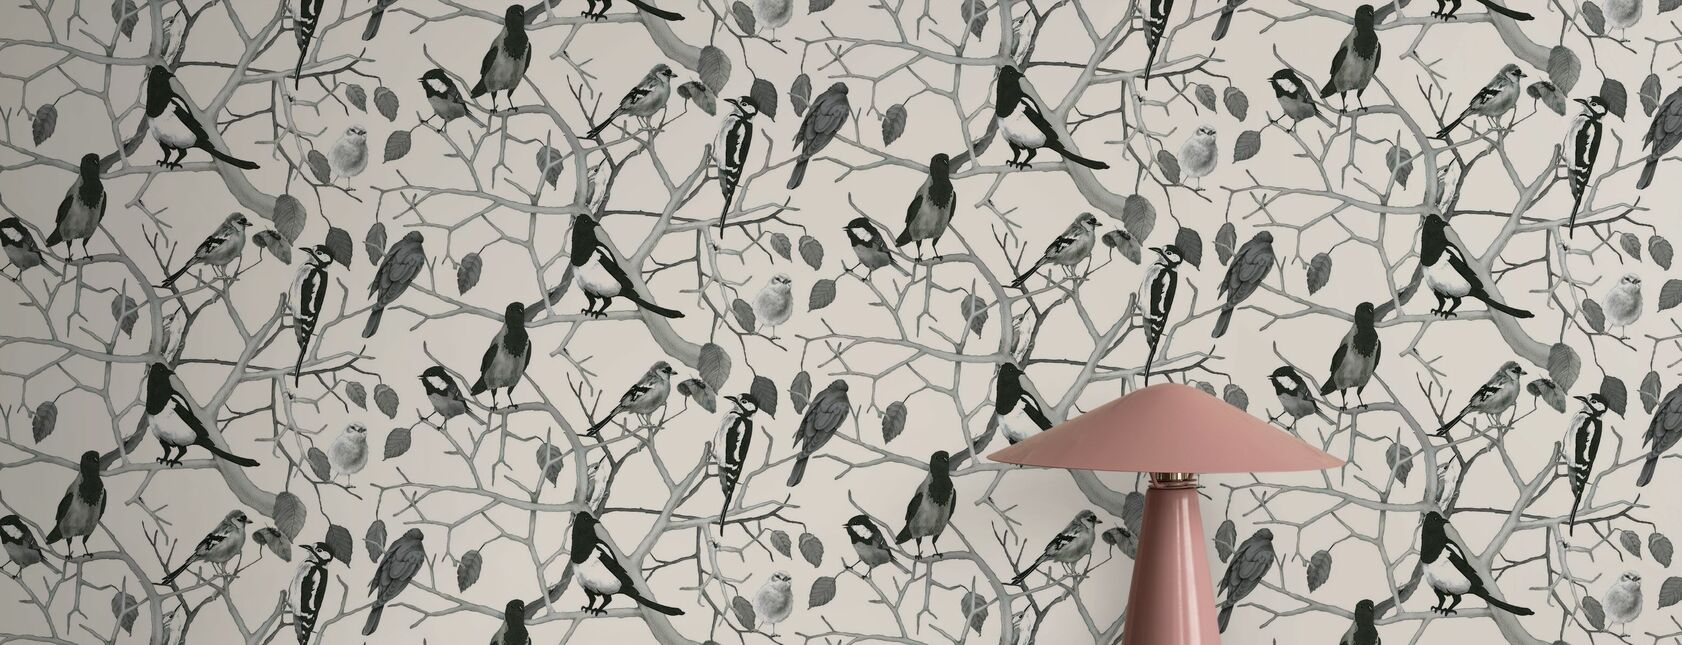 Padrão de pássaros - Papel de parede - close-up